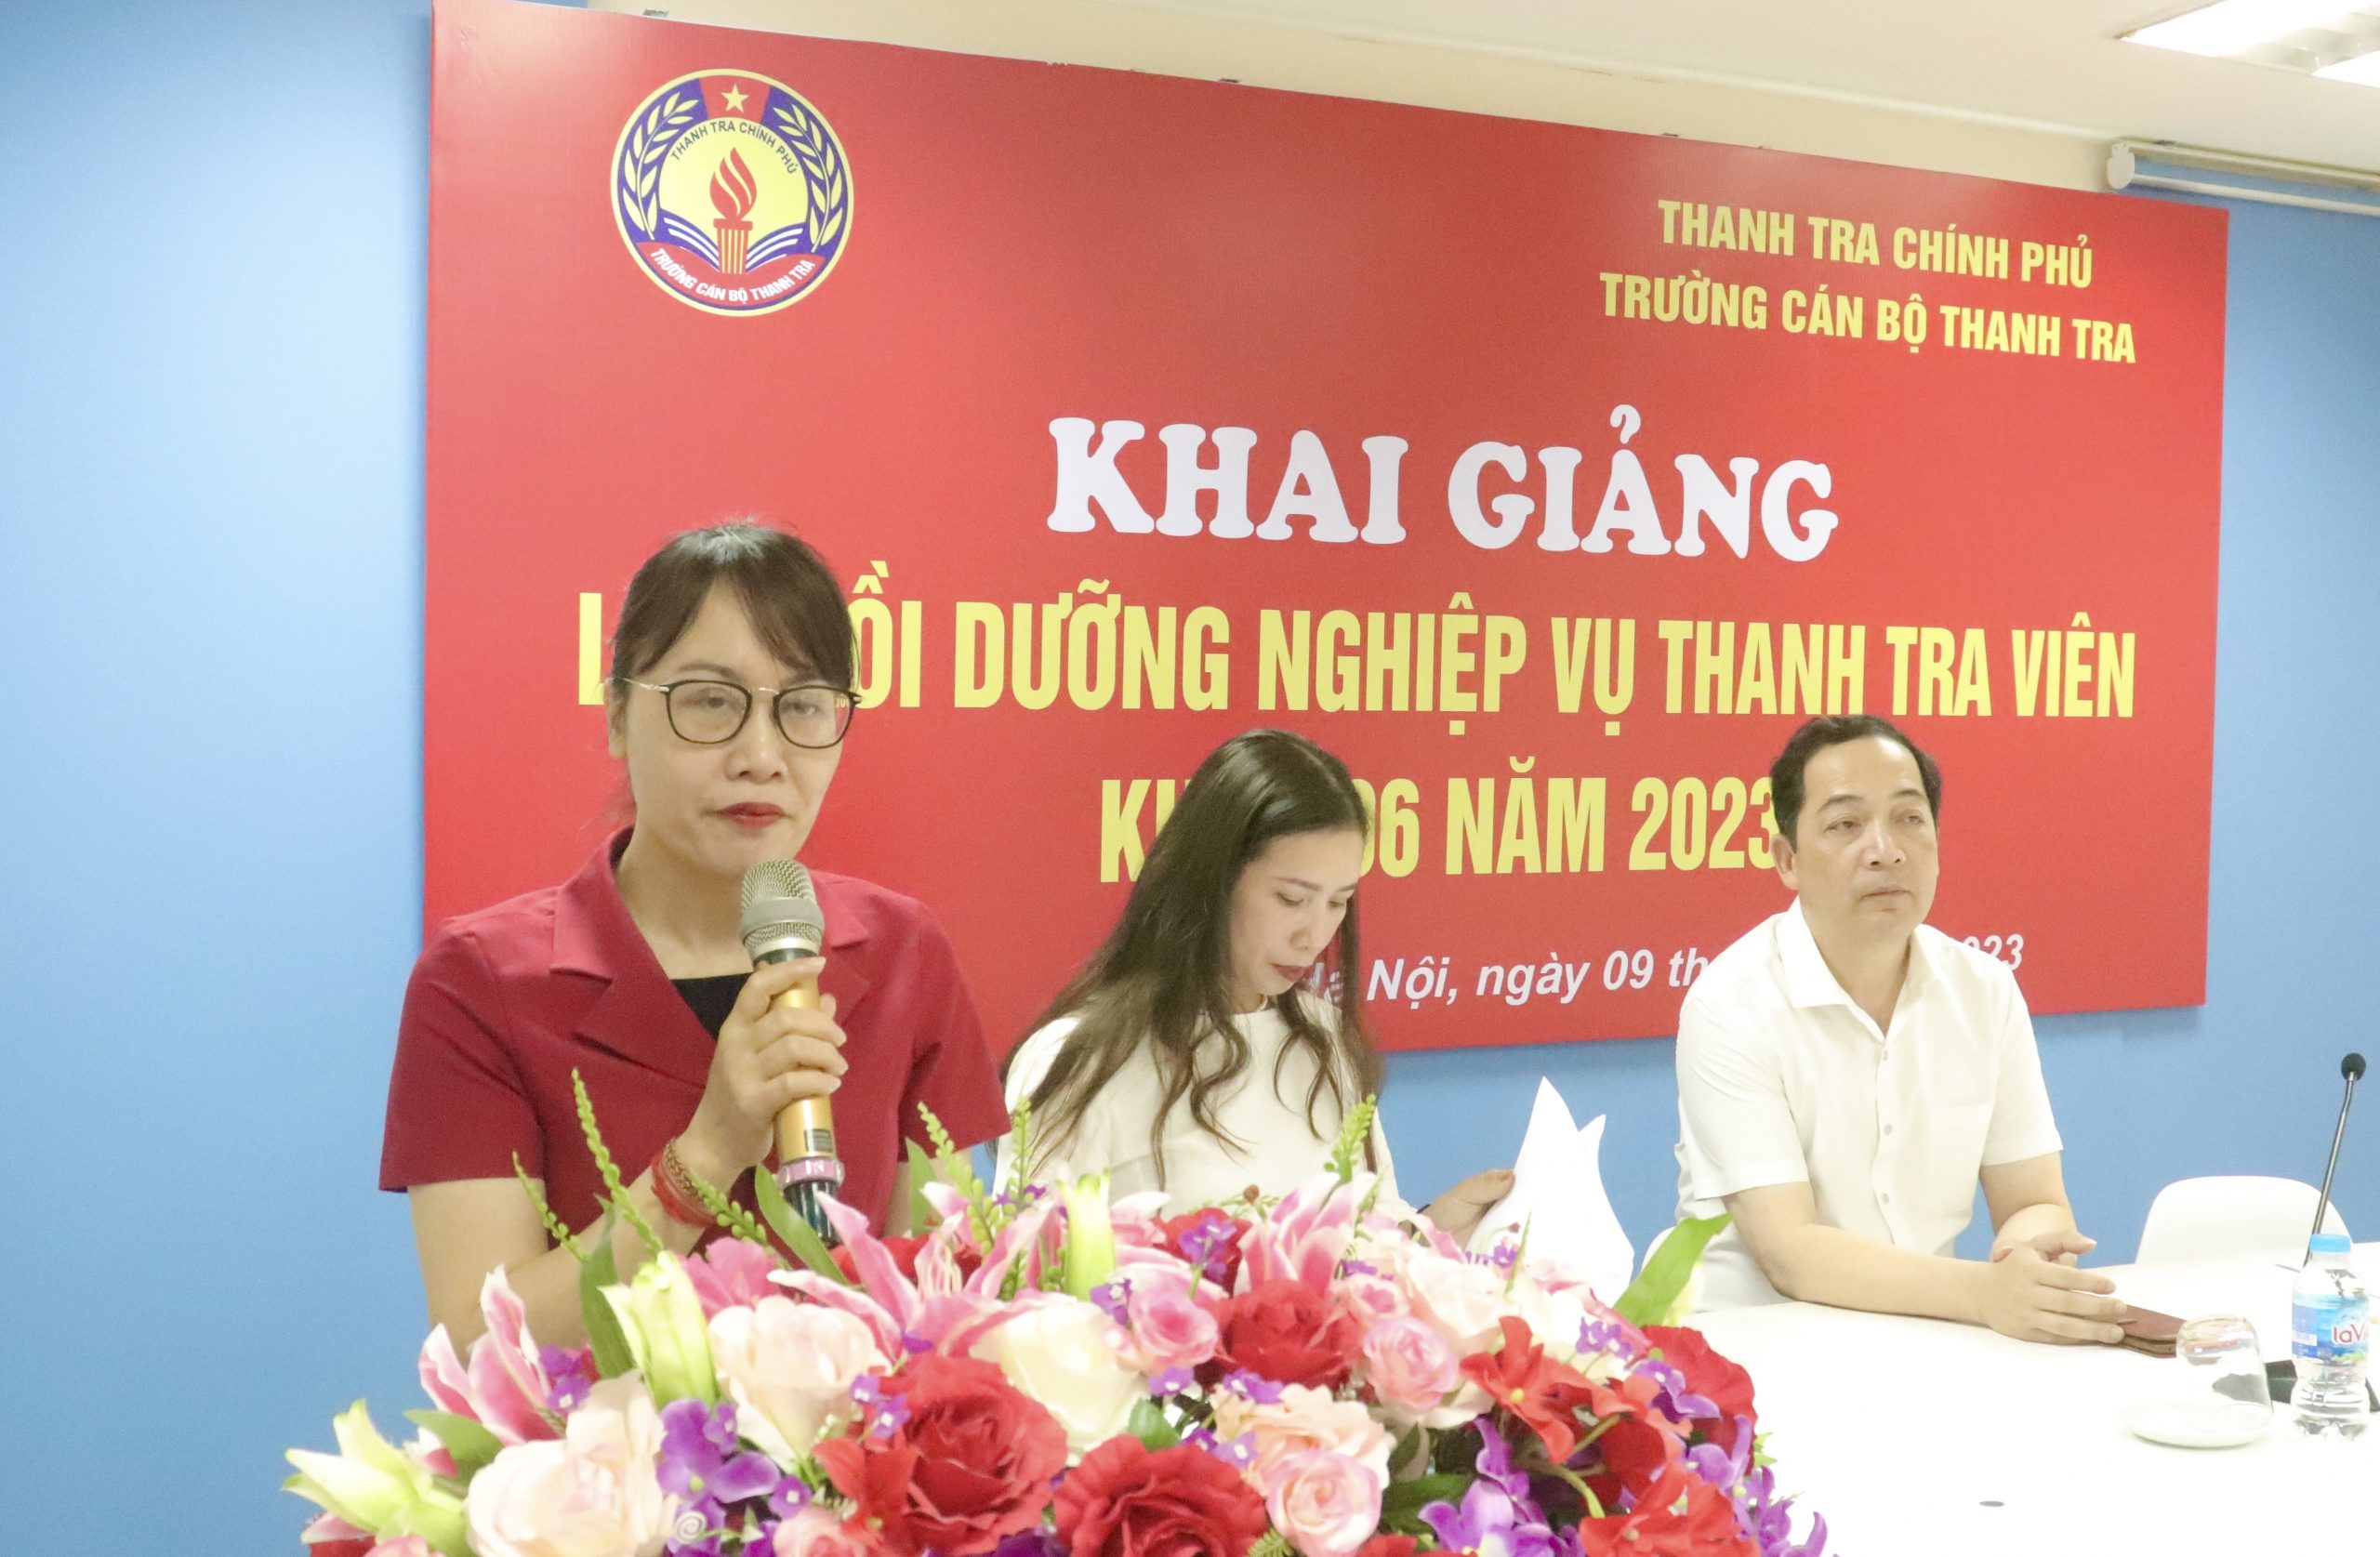 Khai giảng lớp bồi dưỡng nghiệp vụ Thanh tra viên K6 năm 2023 theo hình thức trực tuyến cho các tỉnh Miền Đông Nam Bộ